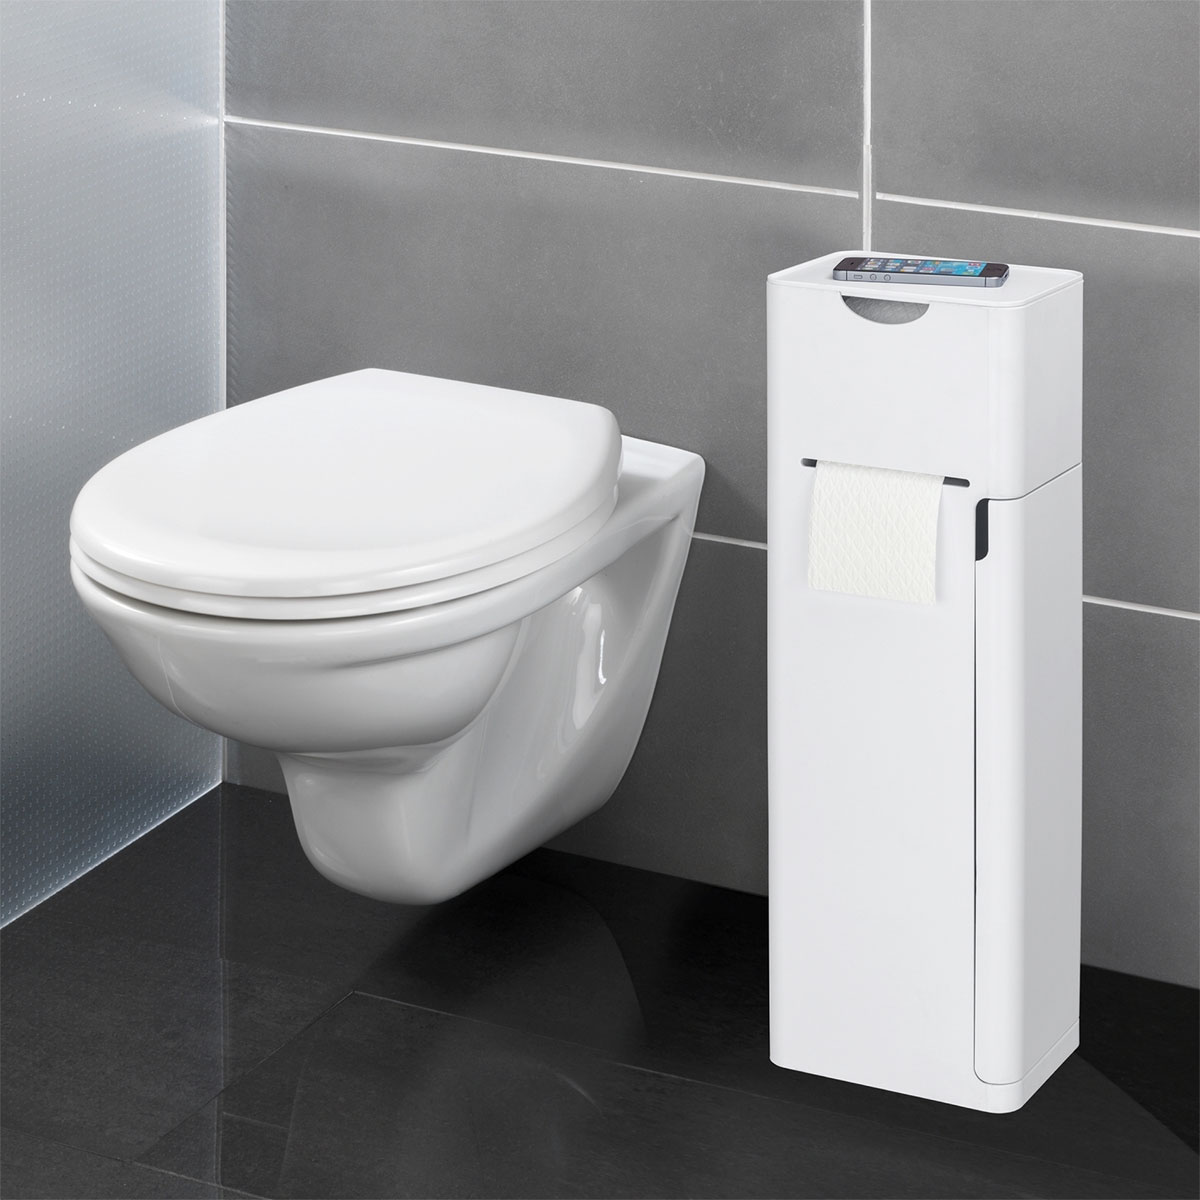 Wenko 6 integrierter WC-Garnitur 514825 Stauraumfächer Weiß Ersatzrollenhalter 1 Imon in matt | und Ablage WC-Bürstenhalter Toilettenpapierhalter Stand